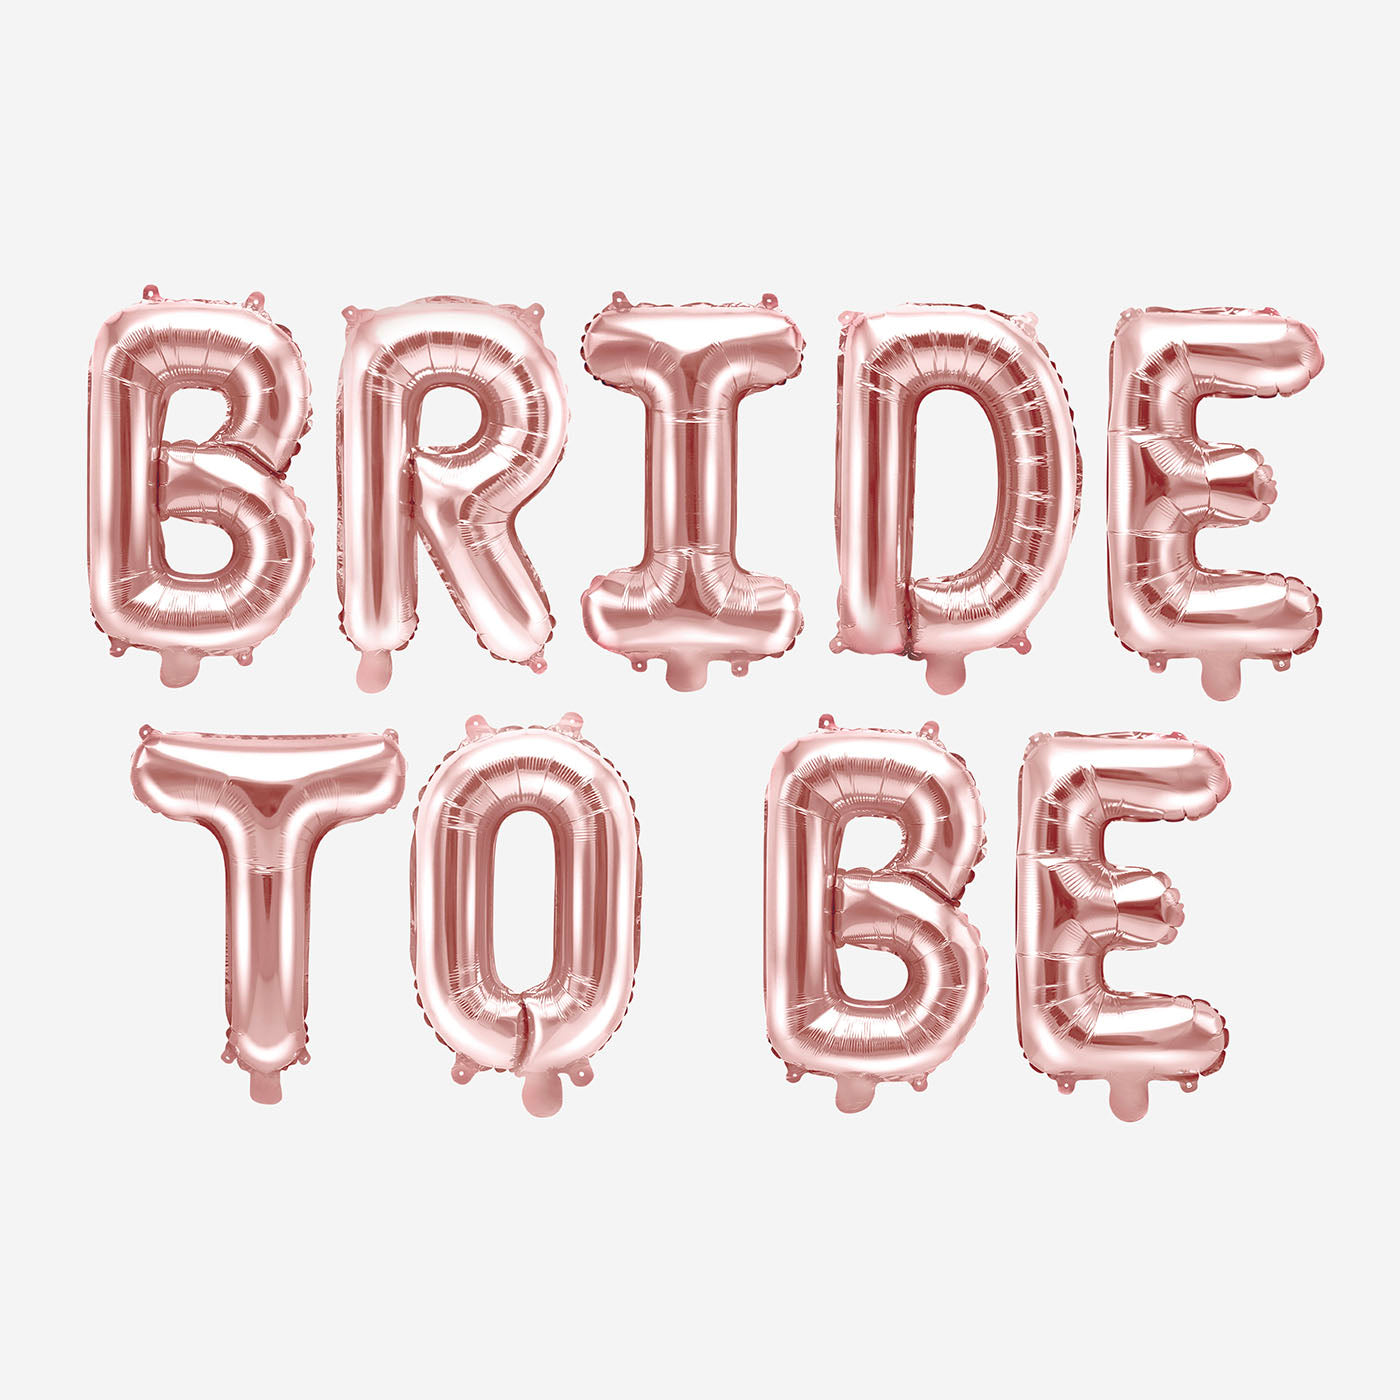 15 Ballons Team Bride noir, rose et blanc avec imprimé doré - enterrement  de vie de